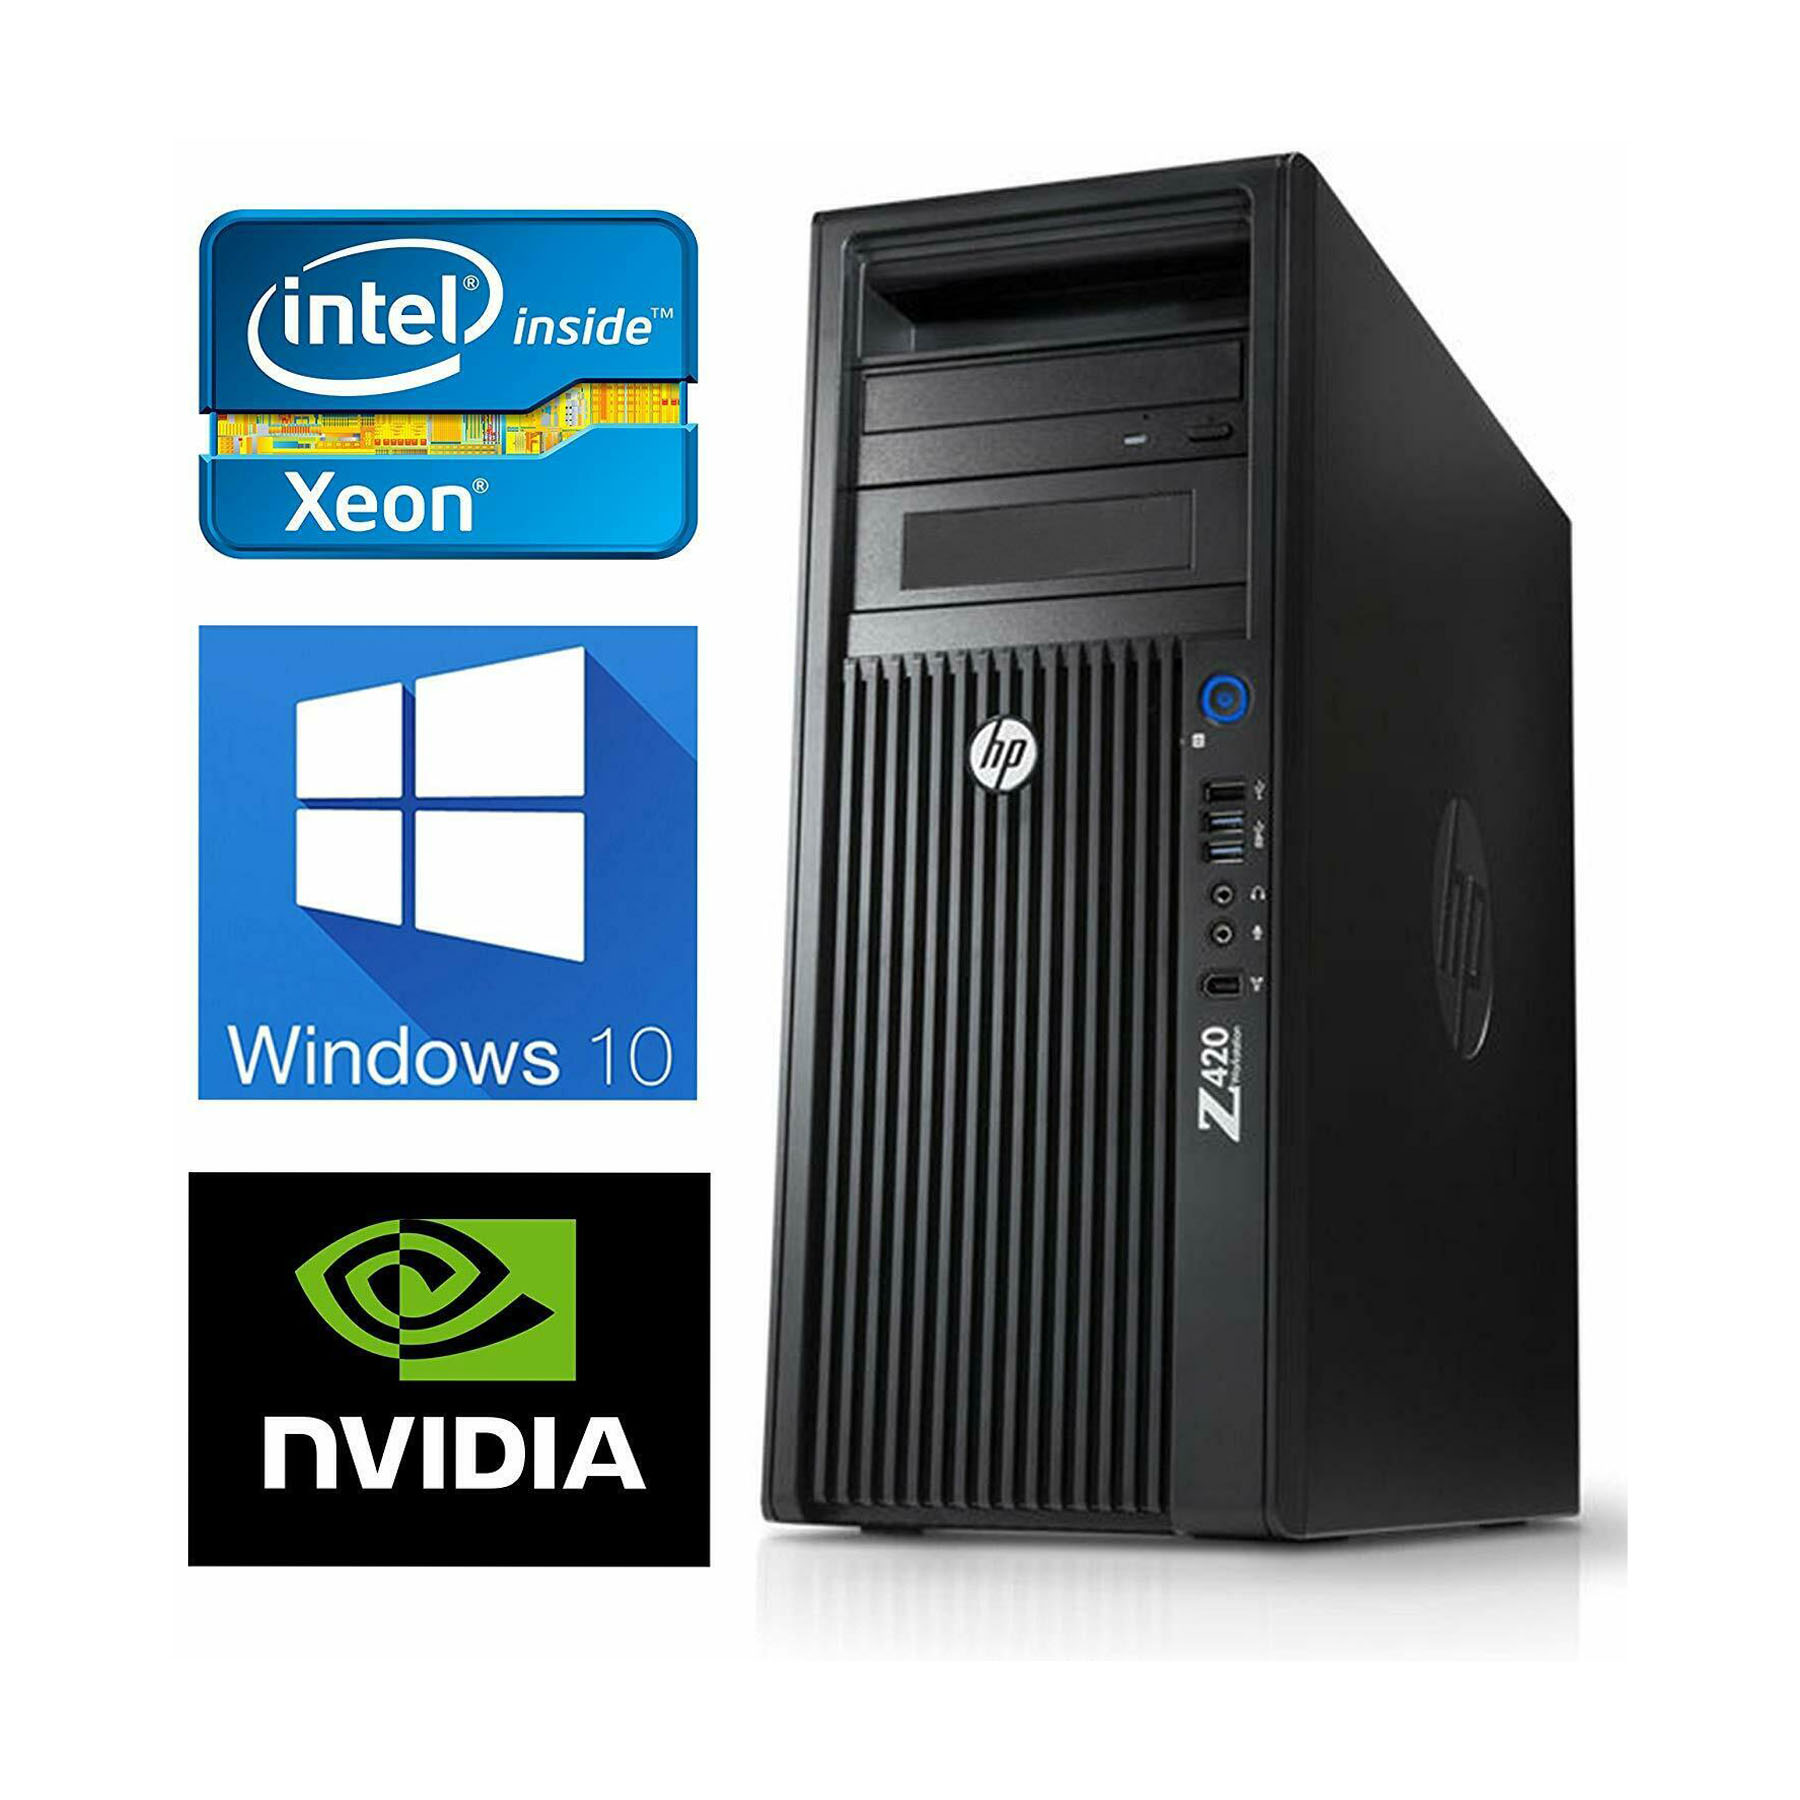 hp Z420 Workstation Xeon E5-1620 v2 3.7GHz 32GB 256GB(SSD) Quadro K2000 DVD -RW Windows10 Pro 64bit - 3